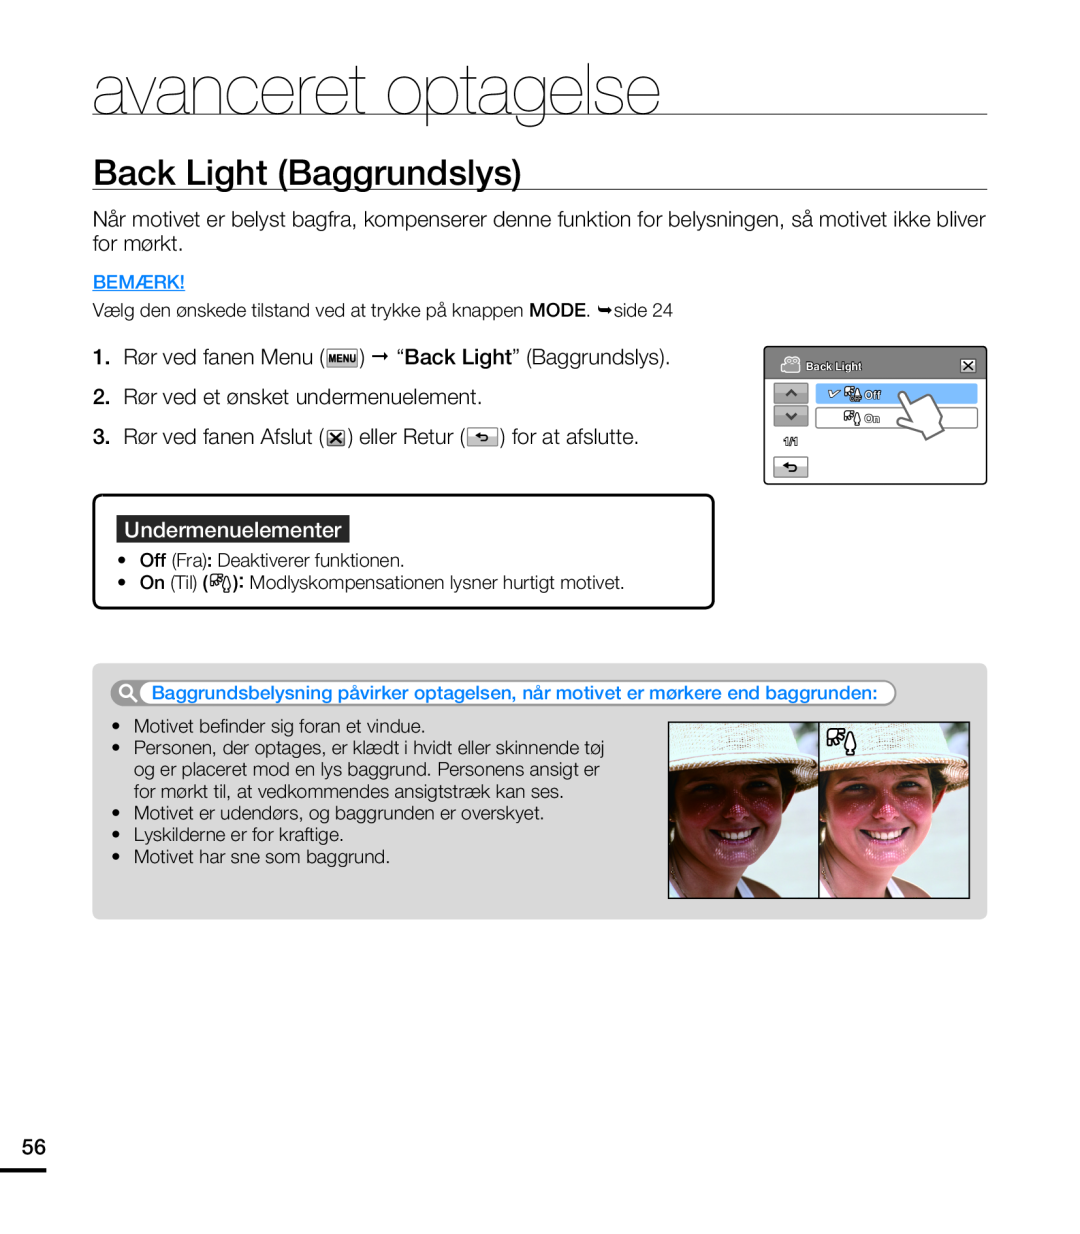 Samsung HMX-T10WP/EDC, HMX-T10BP/EDC manual Back Light Baggrundslys, avanceret optagelse, Undermenuelementer, Bemærk, On 1/1 